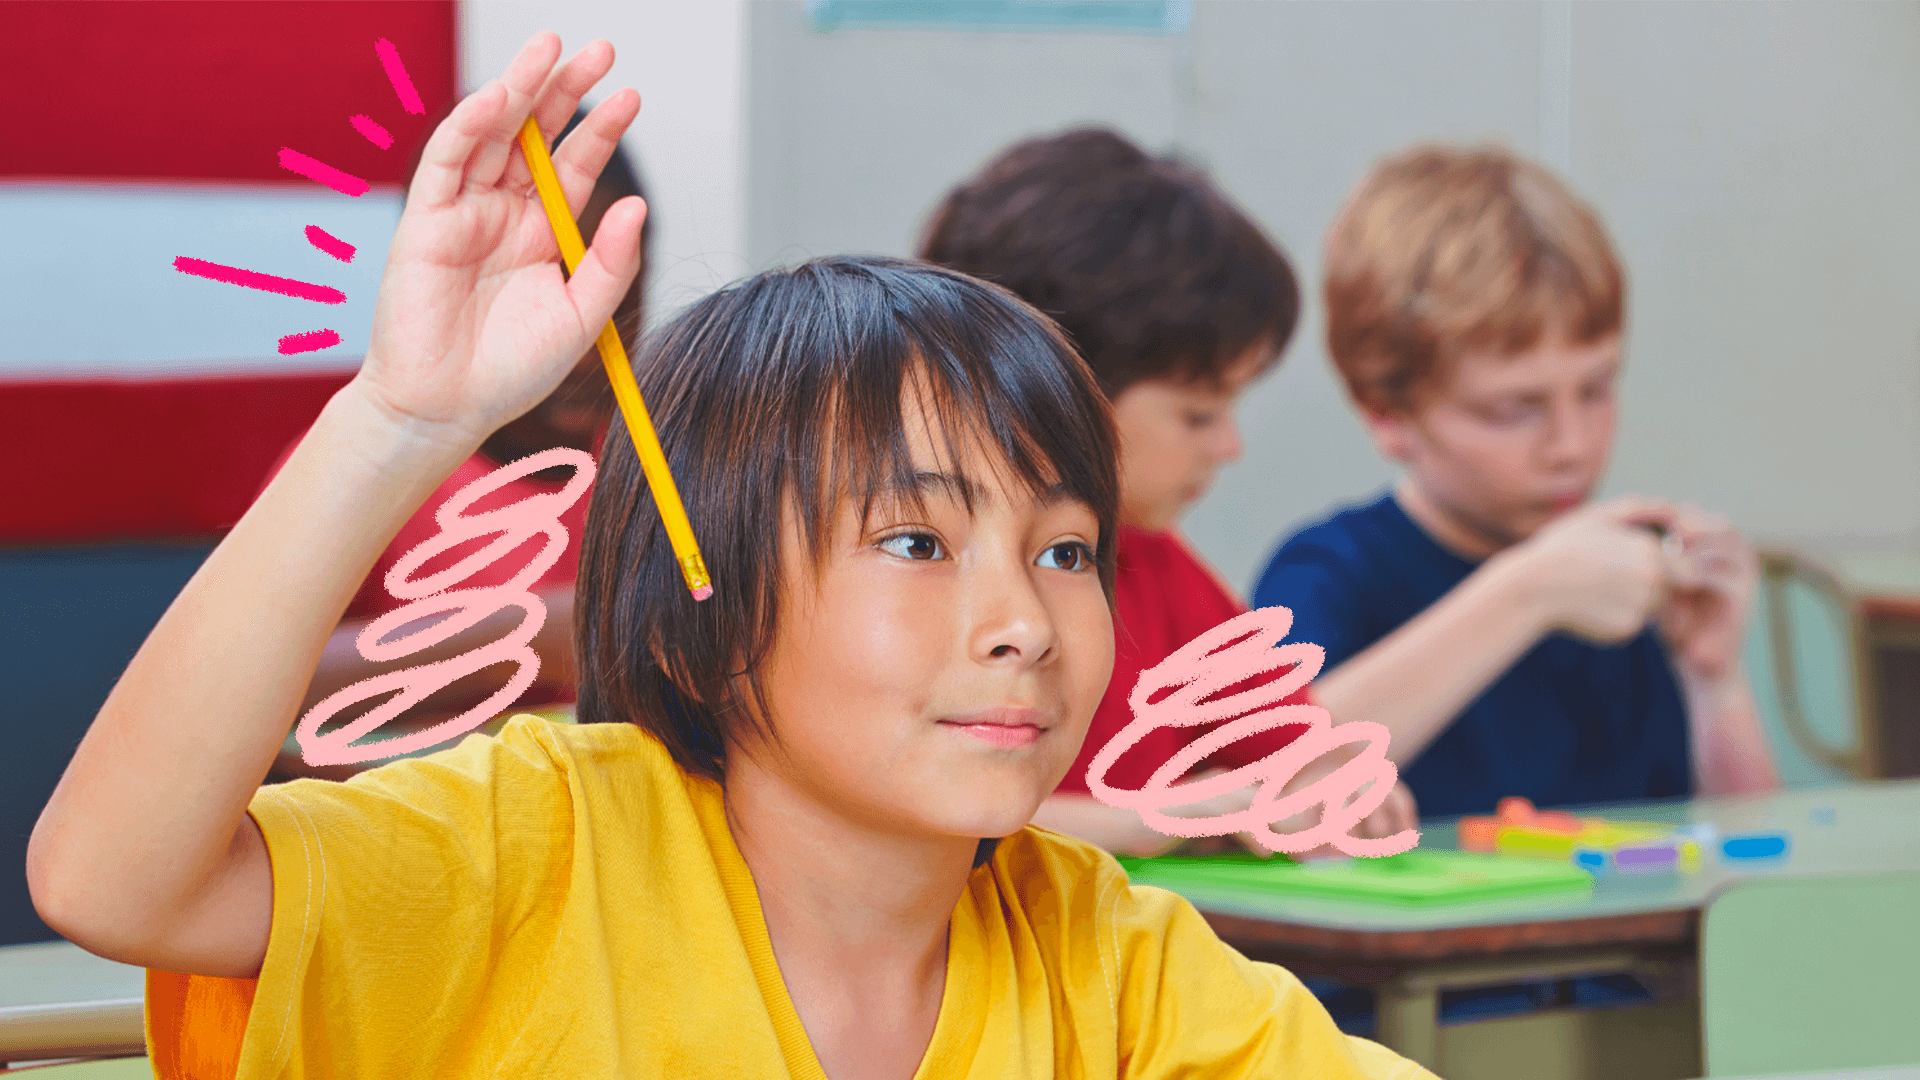 Um menino de cabelo escuro e camiseta amarela levanta a mão que segura um lápis amarelo para fazer uma pergunta na sala de aula. Outras crianças com roupas coloridas estão sentadas em suas respectivas carteiras.